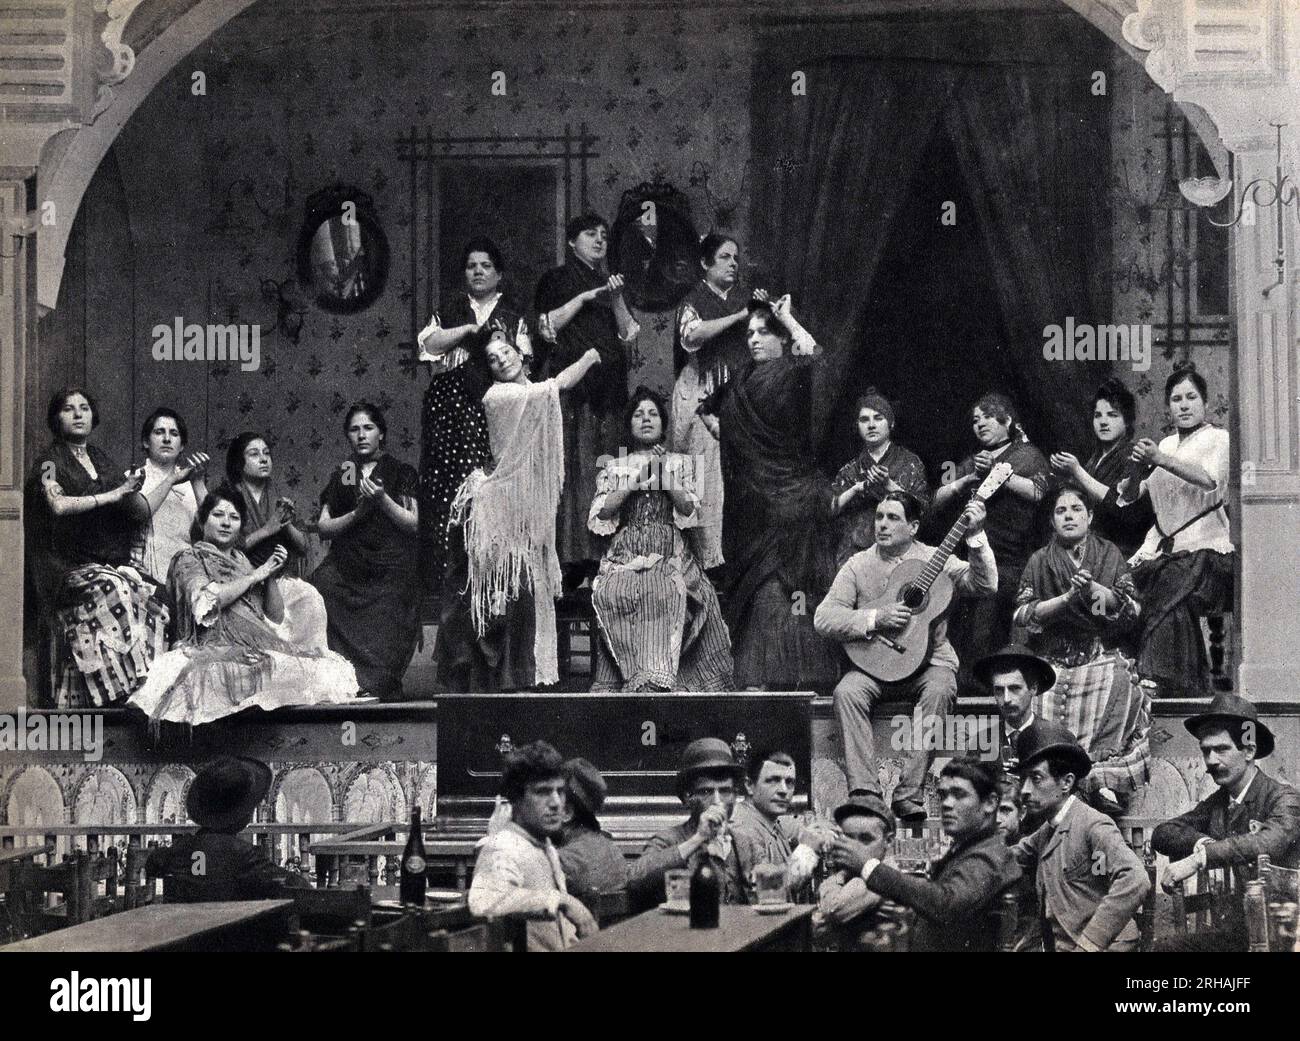 Sevilla en Espagne, Scene de Danse et de musique Flamenco dans un Cafe. Fotografie, FIN 19eme Siecle Stockfoto